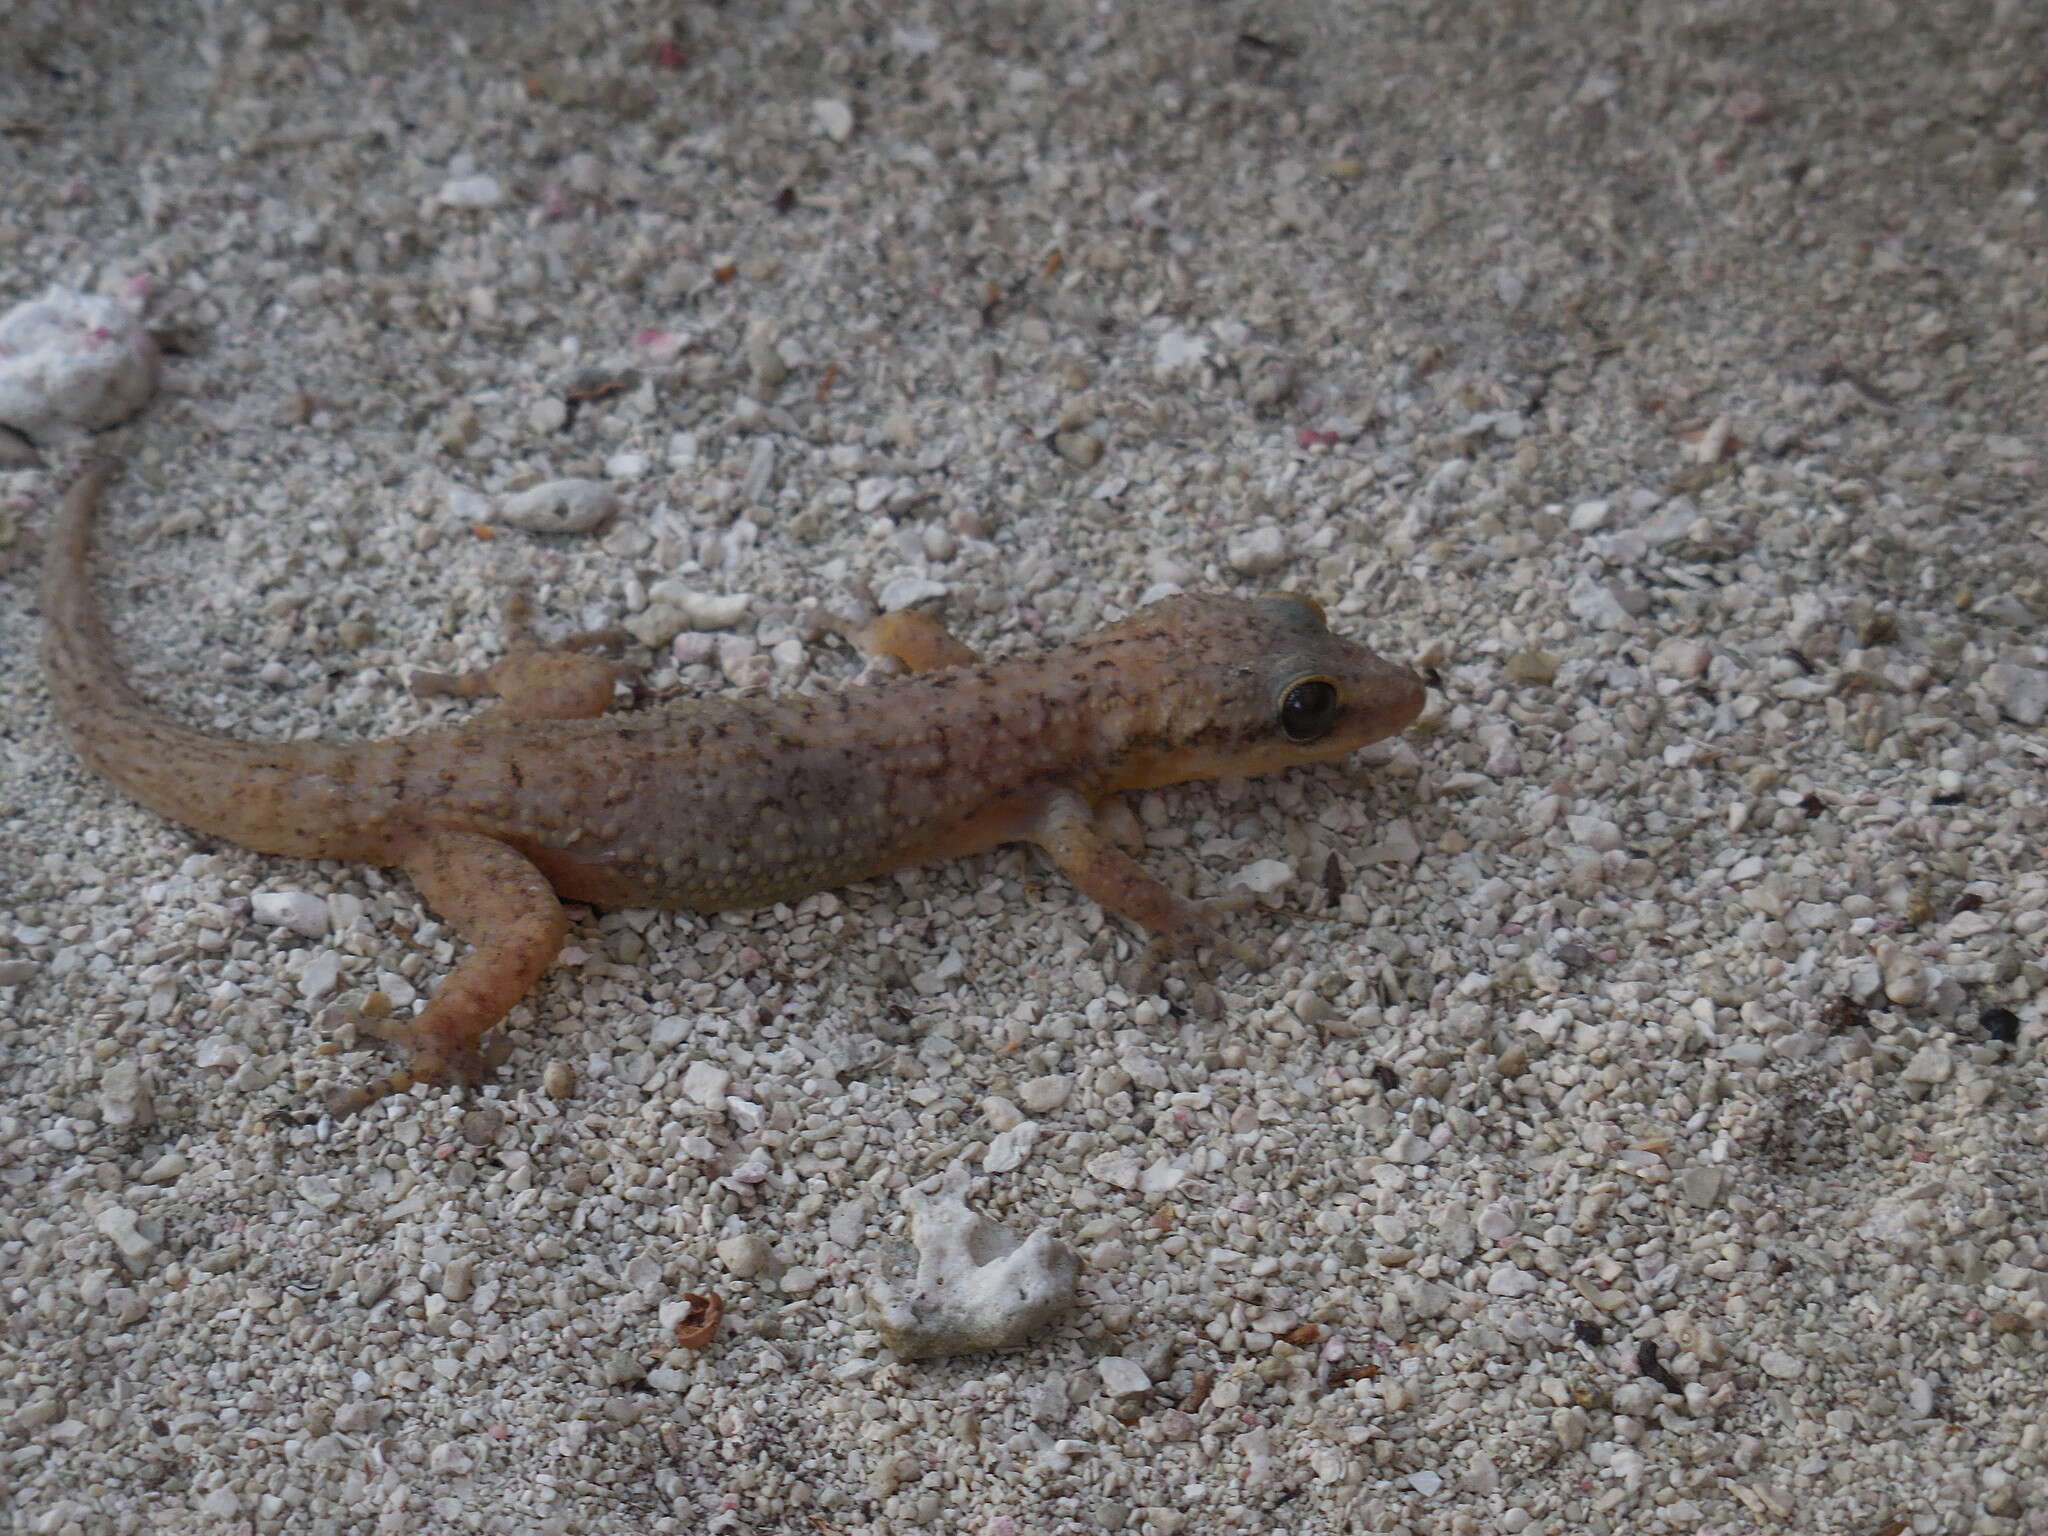 Image of Belize Leaf-toed  Gecko